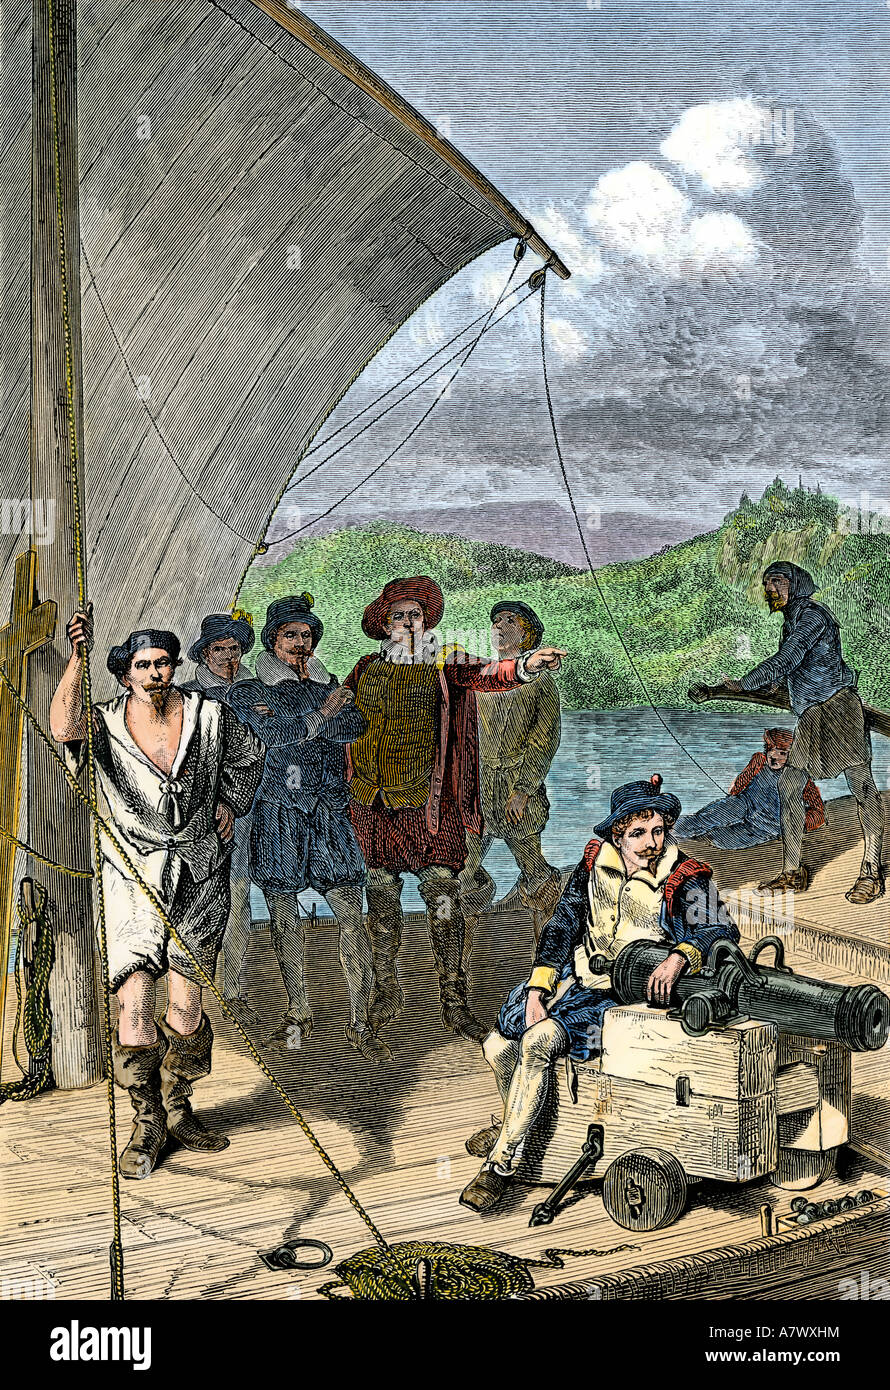 Les explorateurs anglais jusqu'à la rivière Penobscot sur la côte du Maine 1500s. À la main, gravure sur bois Banque D'Images